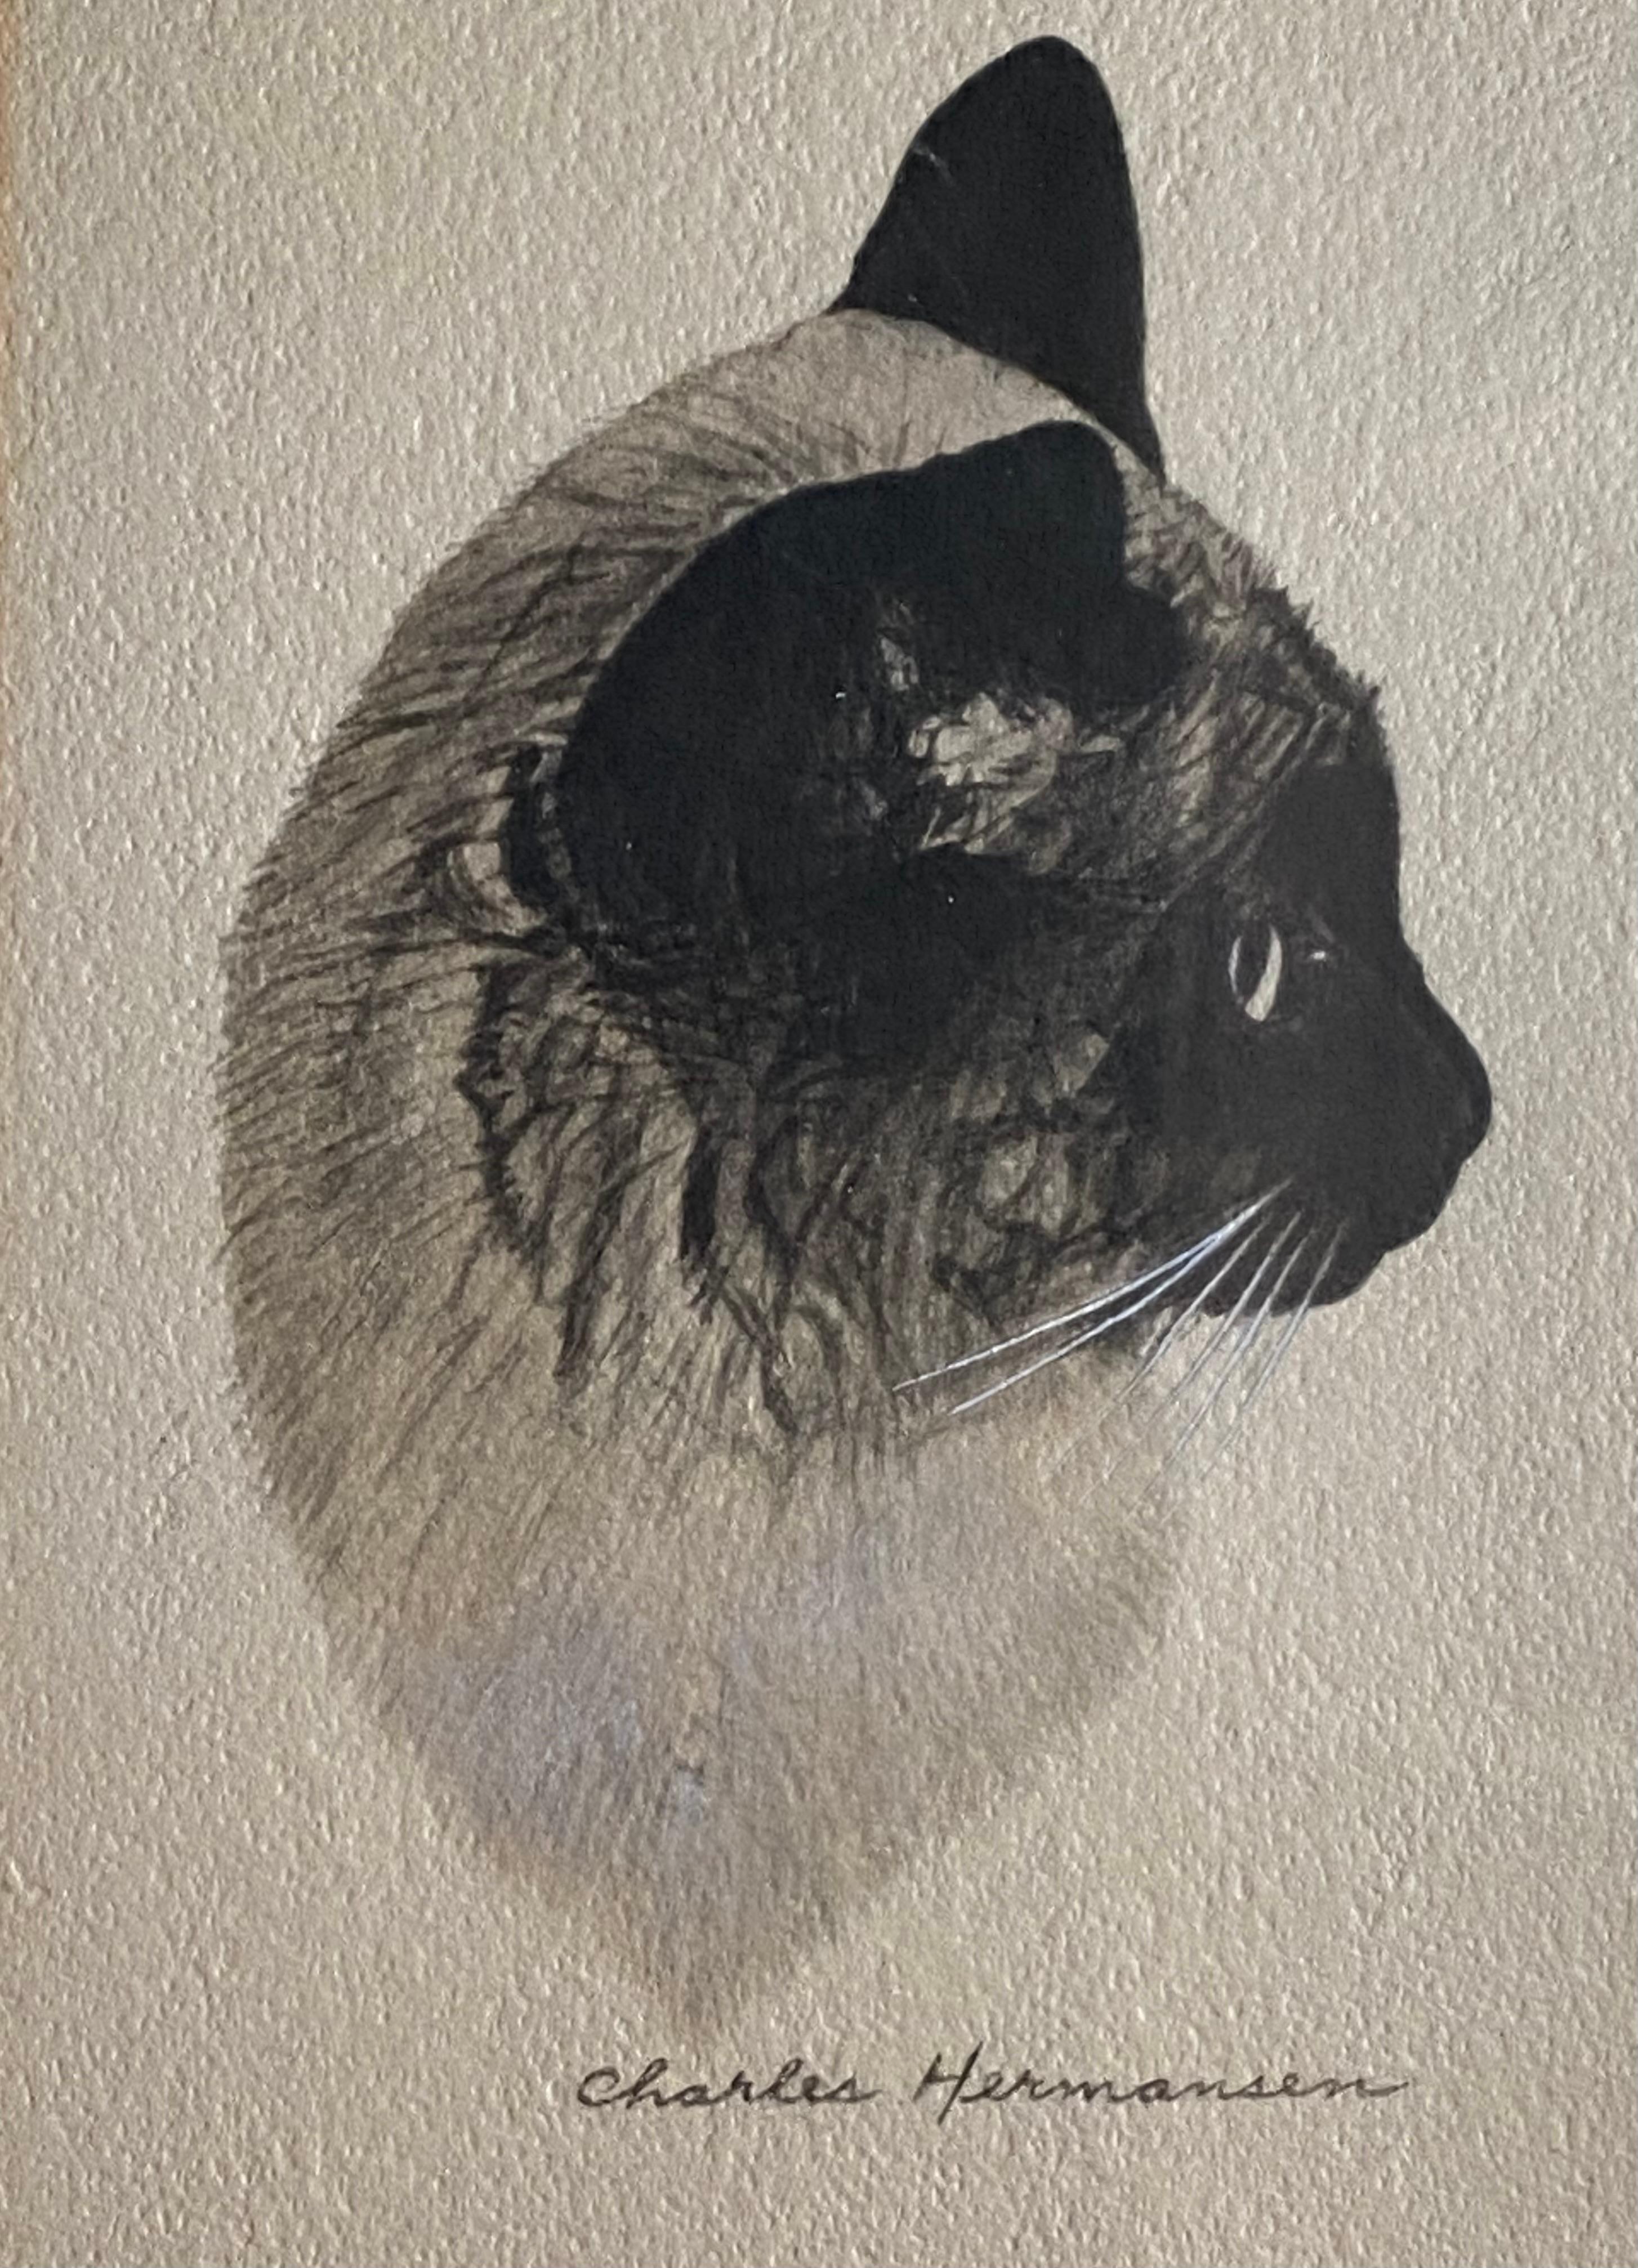 Profil exquis d'un chat réalisé au graphite, à l'aquarelle et au lavis brossé par l'artiste d'origine norvégienne, Charles Hermansen.  Signé en bas au milieu. Circa 1940. L'état est très bon.  Magnifiquement maté et encadré par un professionnel. 